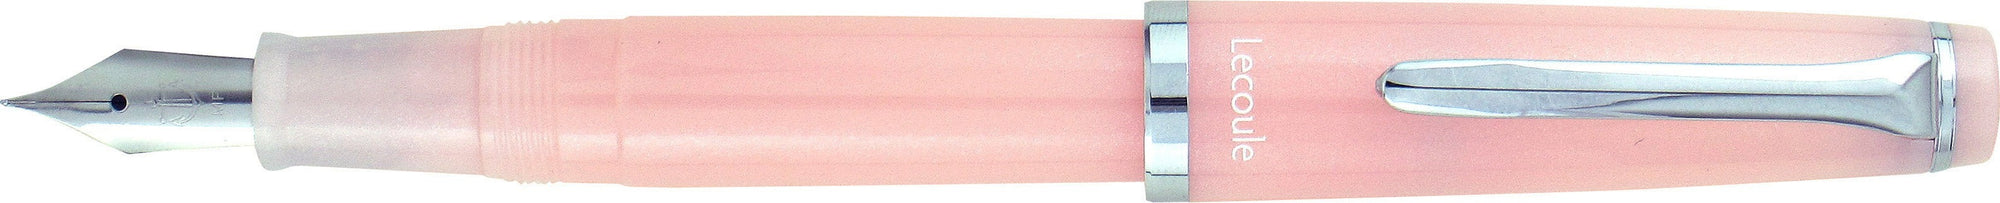 Sailor Lecoule Power Stone fountain pen - Rose quartz